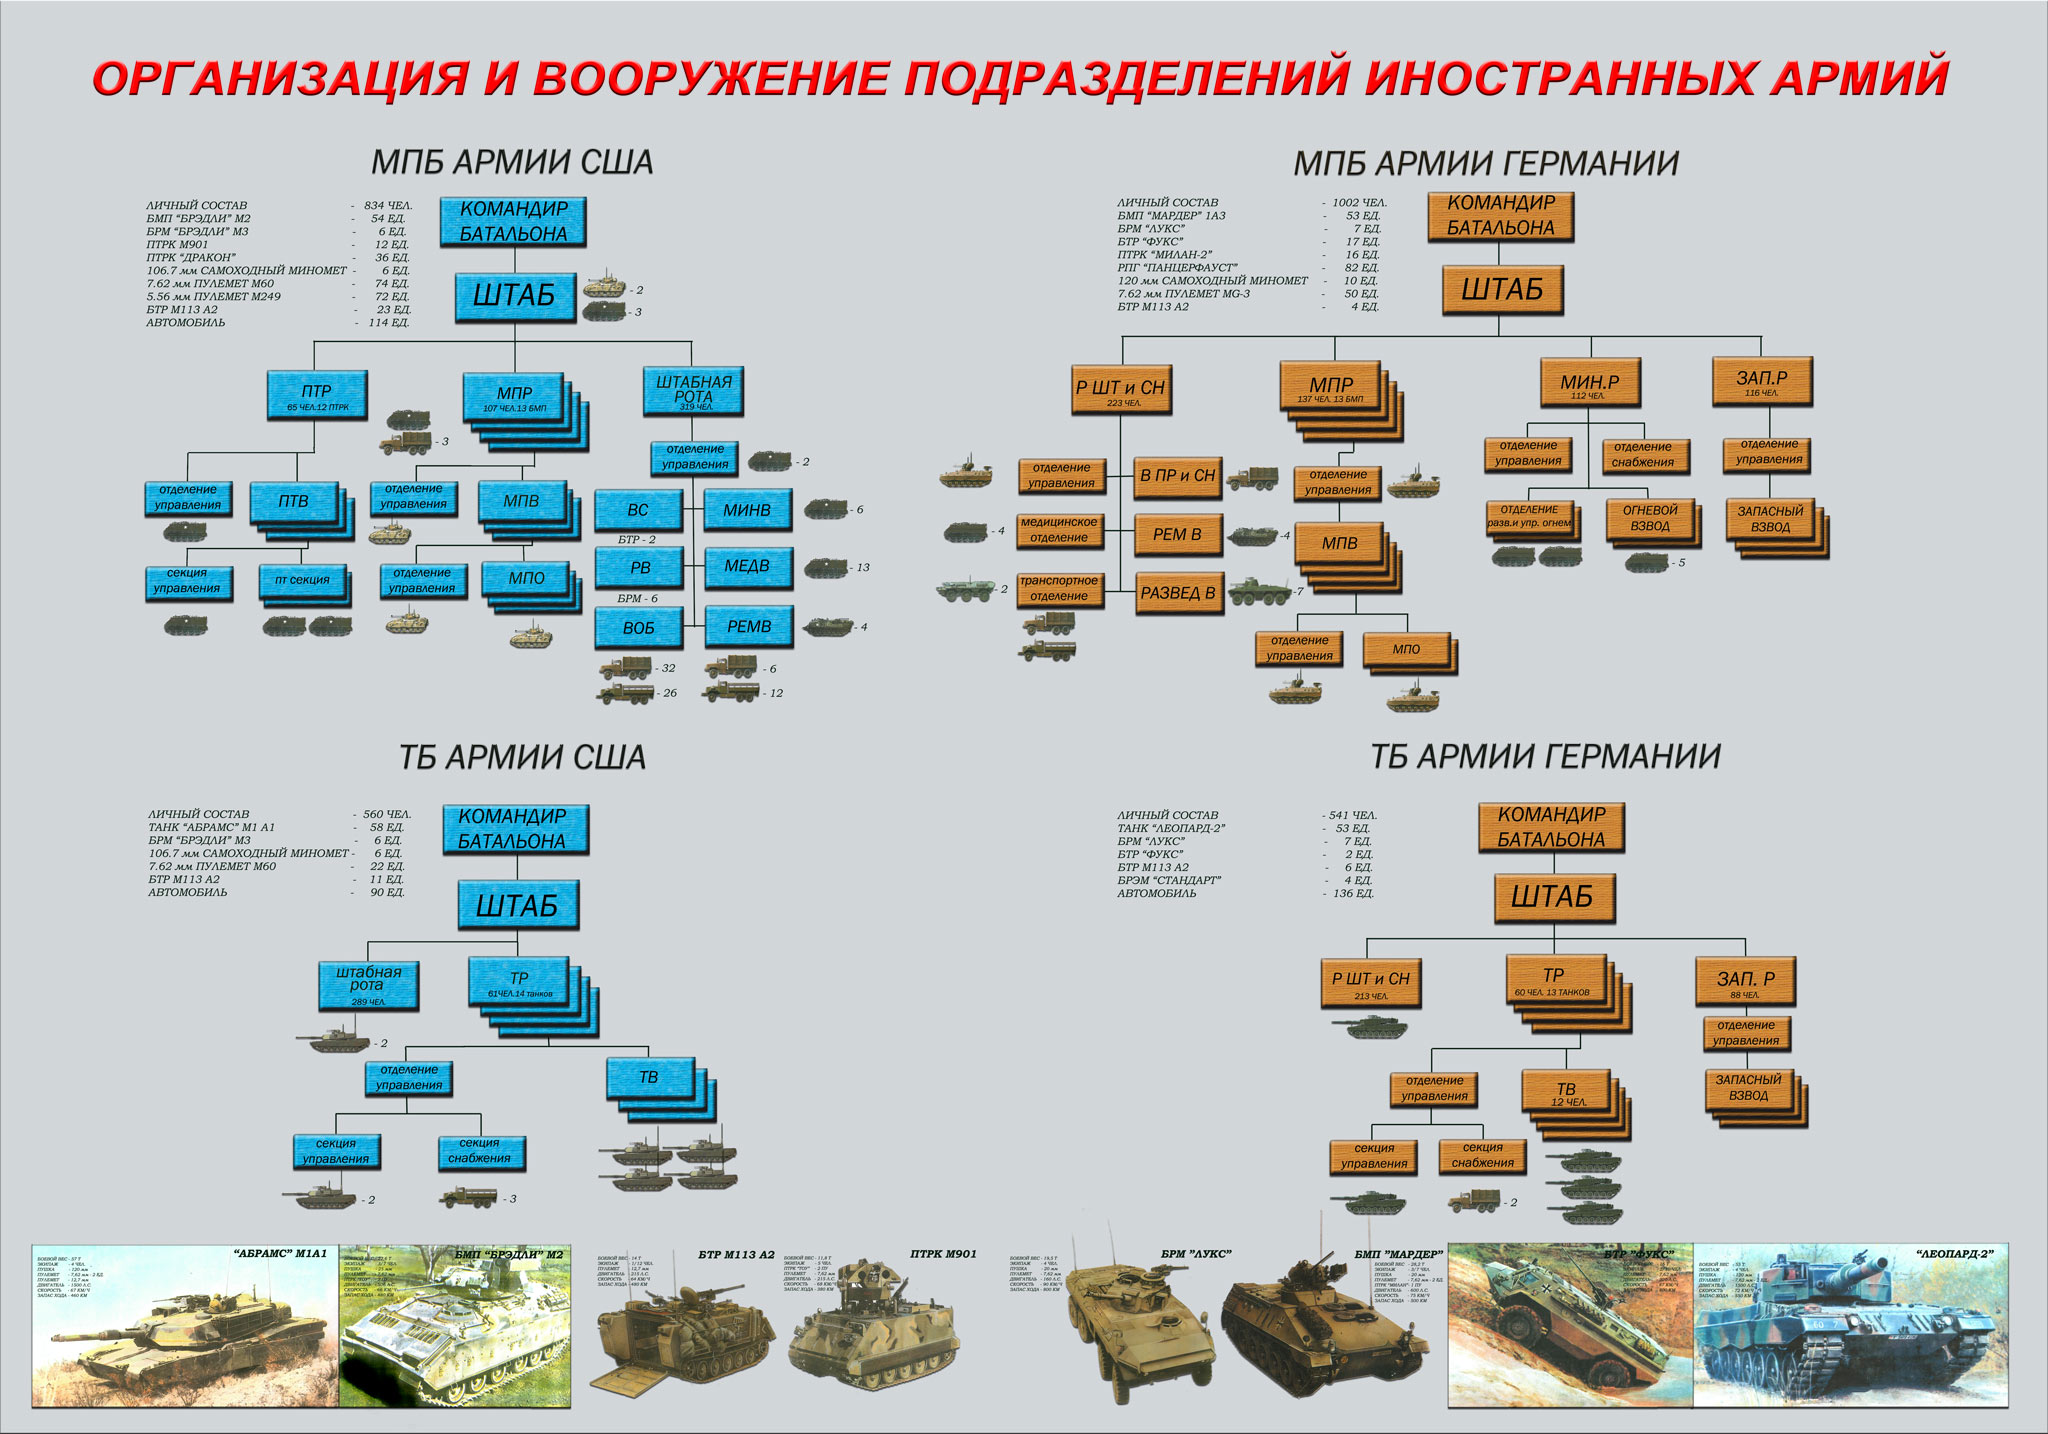 Организационно-штатная структура танкового батальона армии России